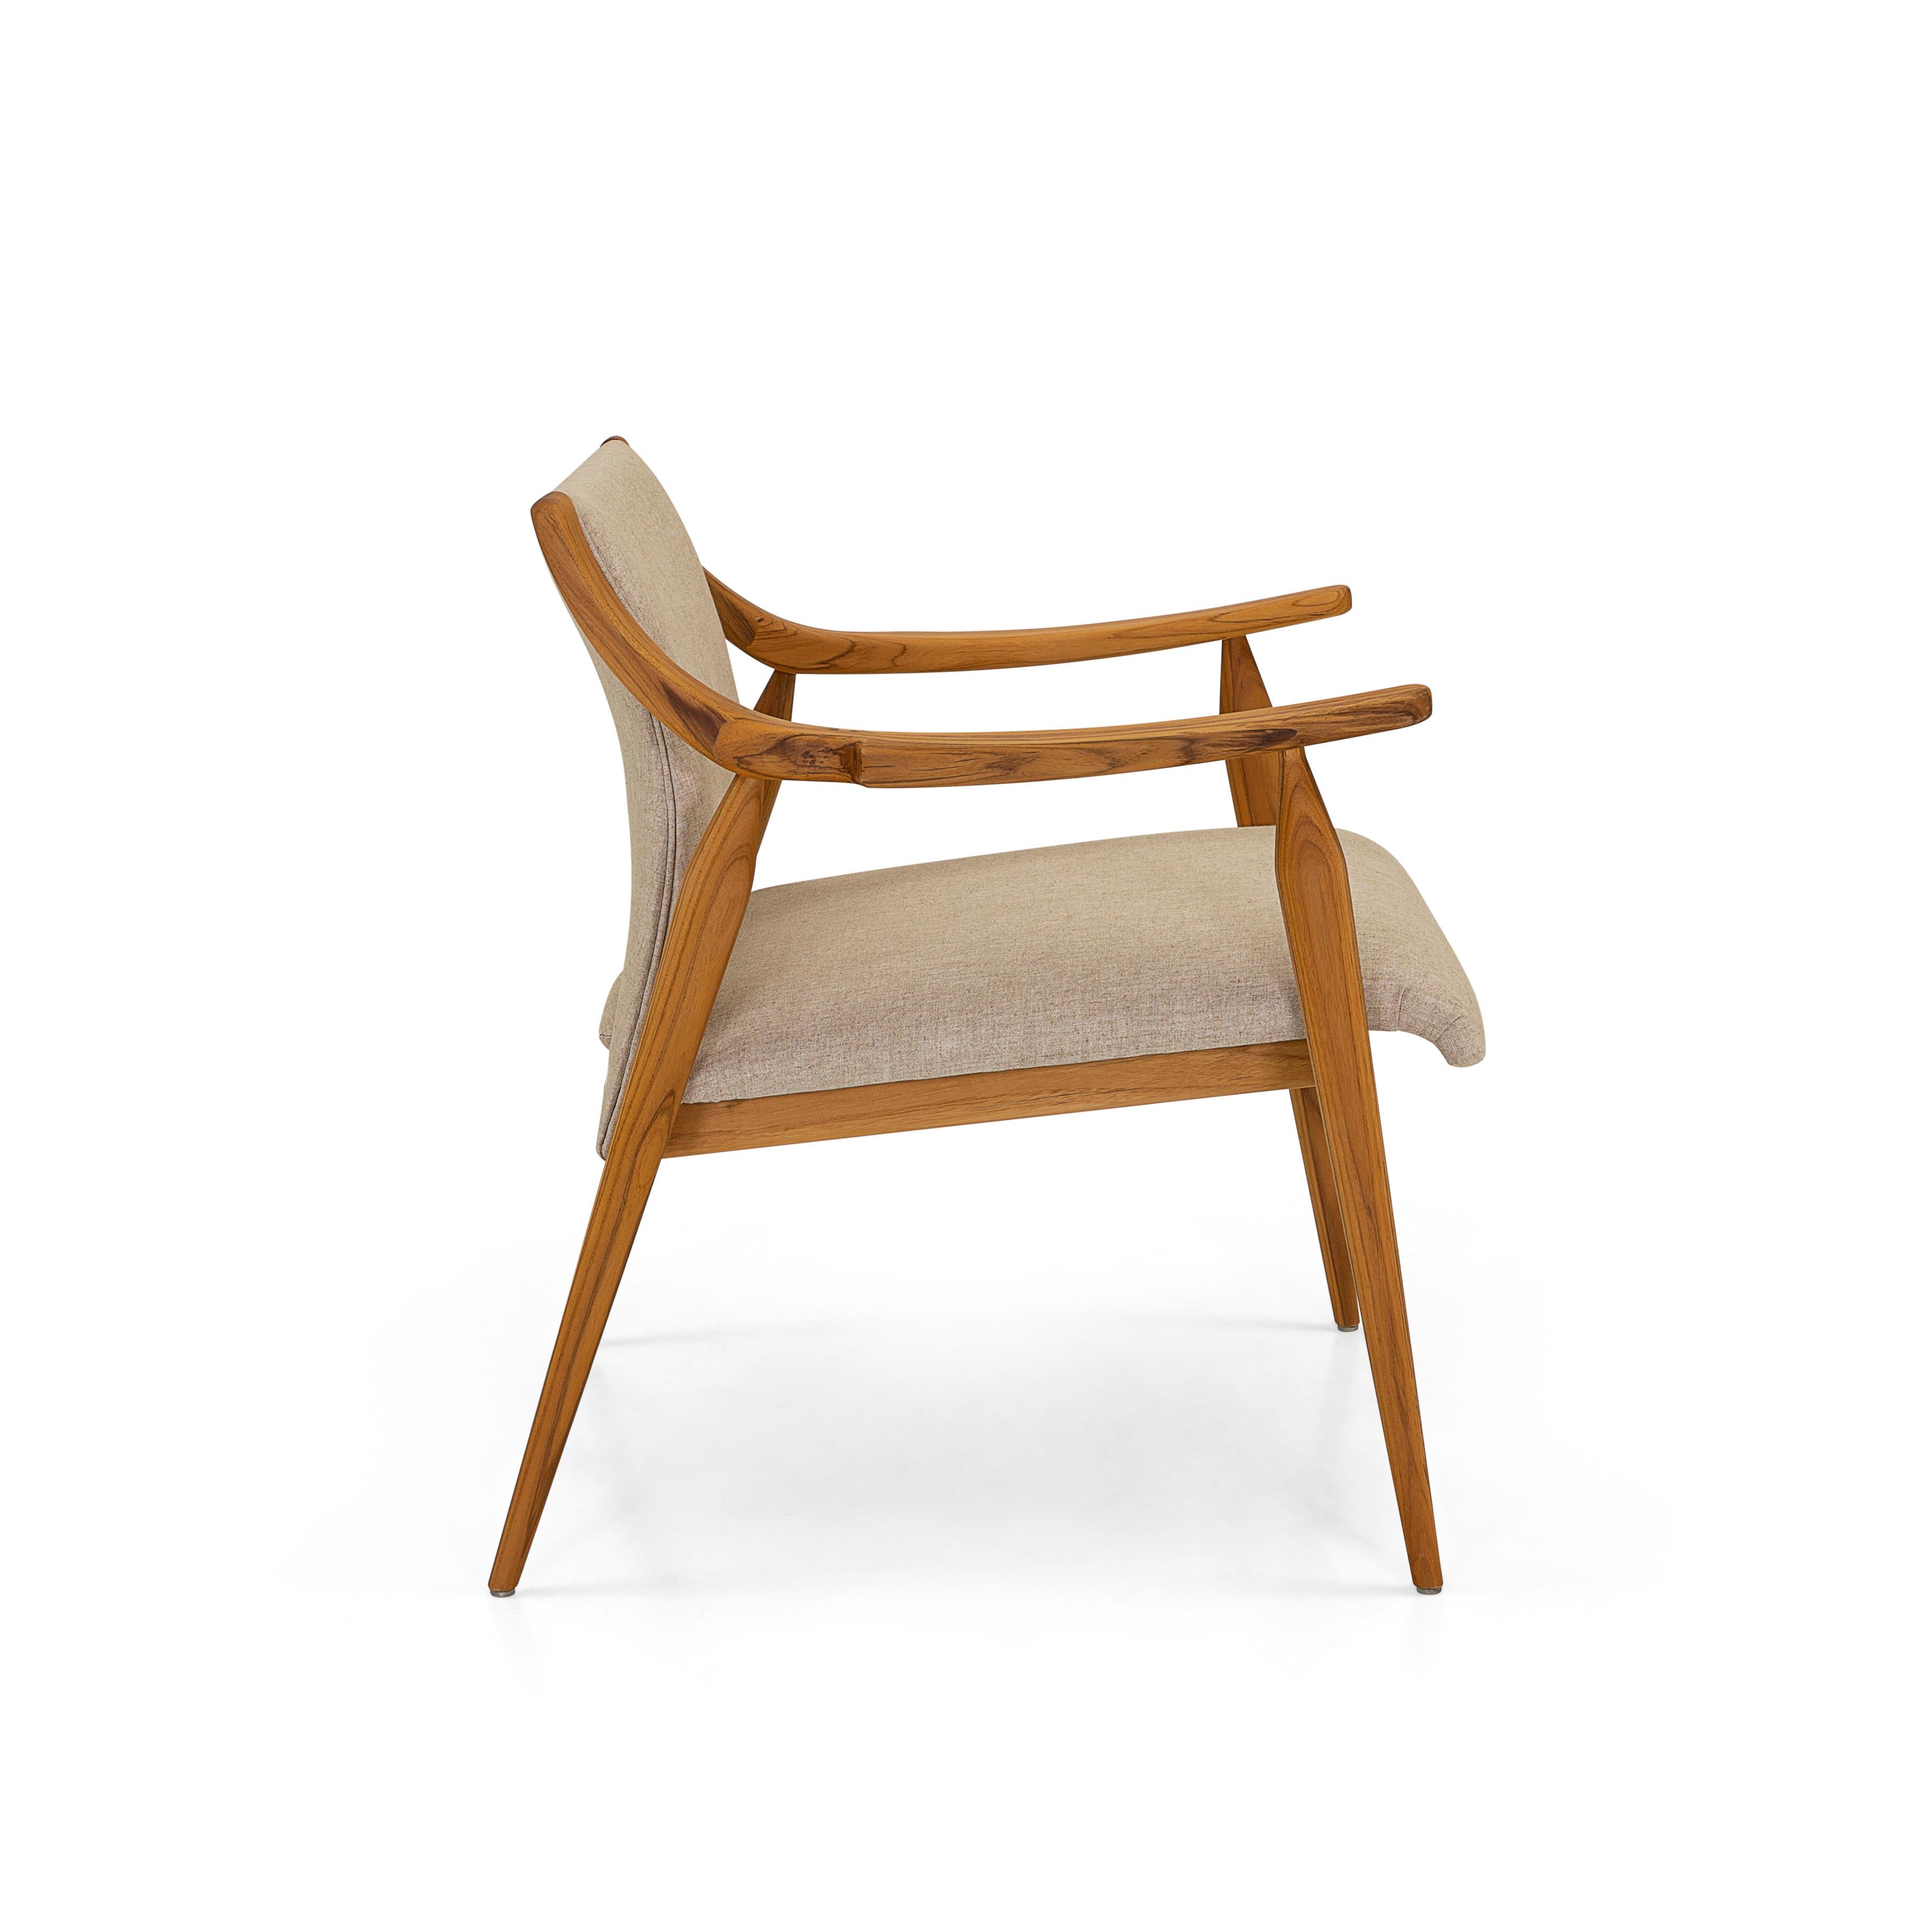 Le fauteuil Mince est un ajout accueillant à n'importe quelle pièce de votre décoration moderne avec ses bras incurvés et ses pieds en fuseau à la finition teck et son beau tissu marron et doux pour les coussins. Cette chaise moderne présente un